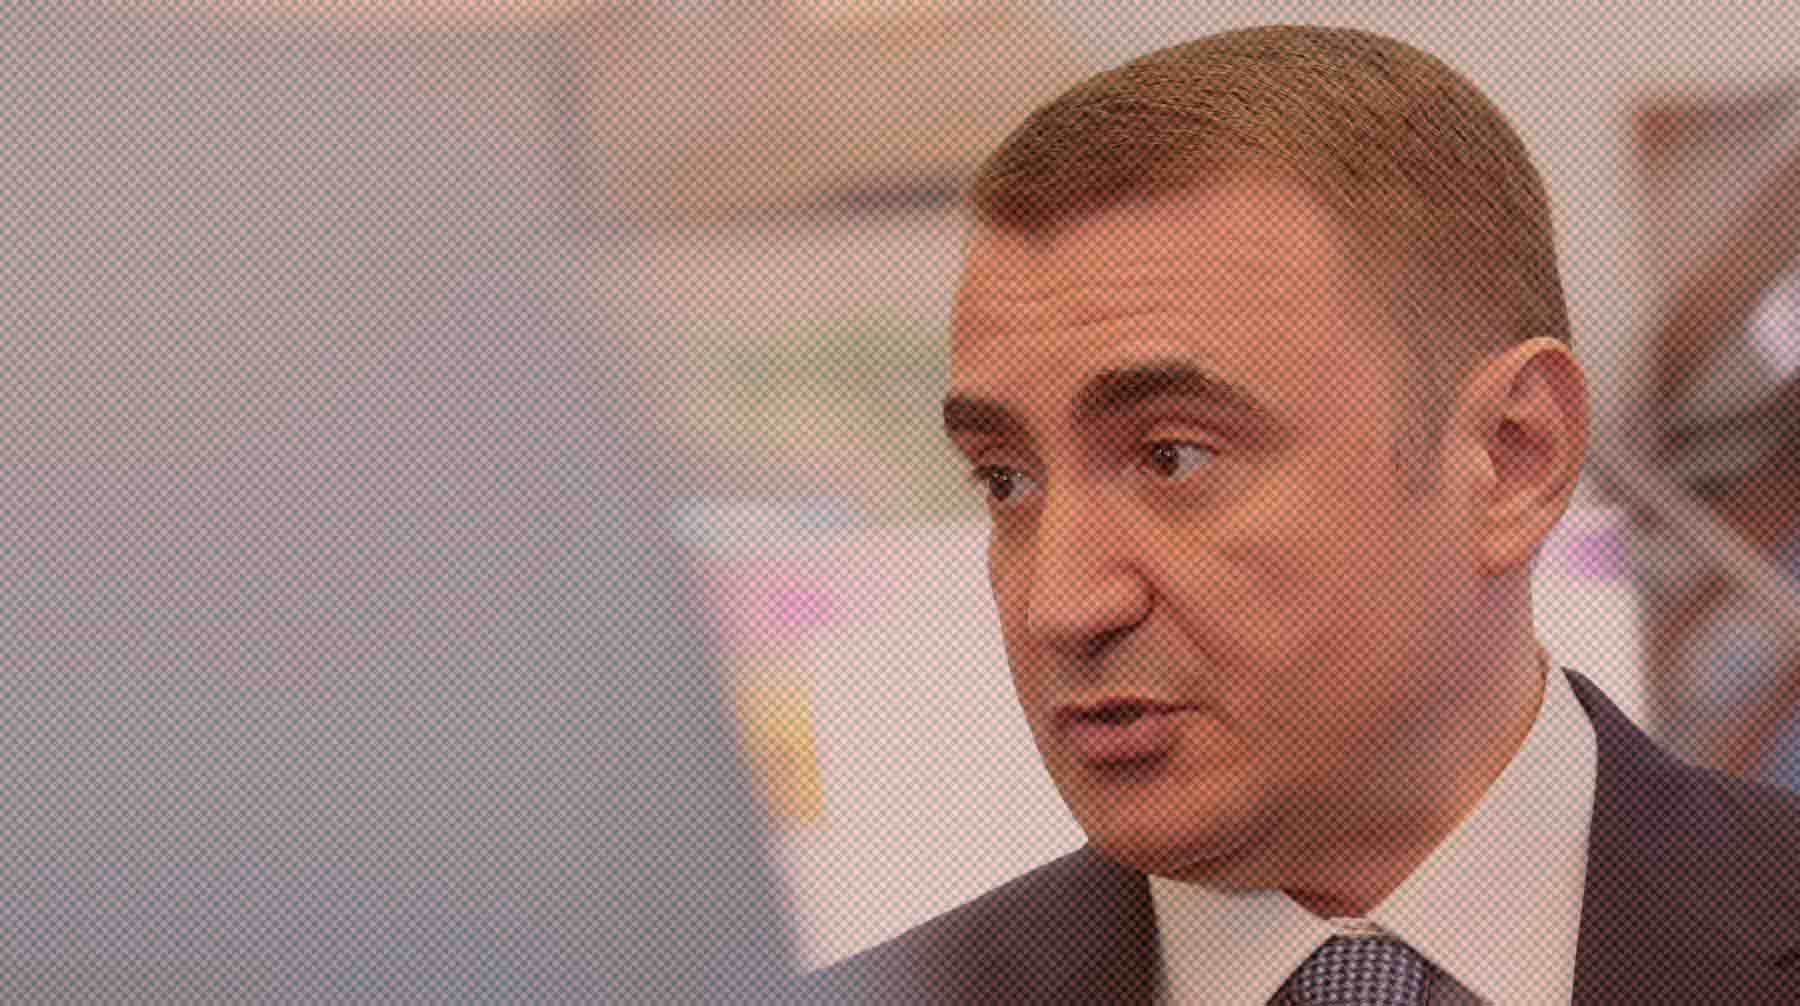 Ранее появилась информация, что губернатор Тульской области станет новым министром по чрезвычайным ситуациям Алексей Дюмин